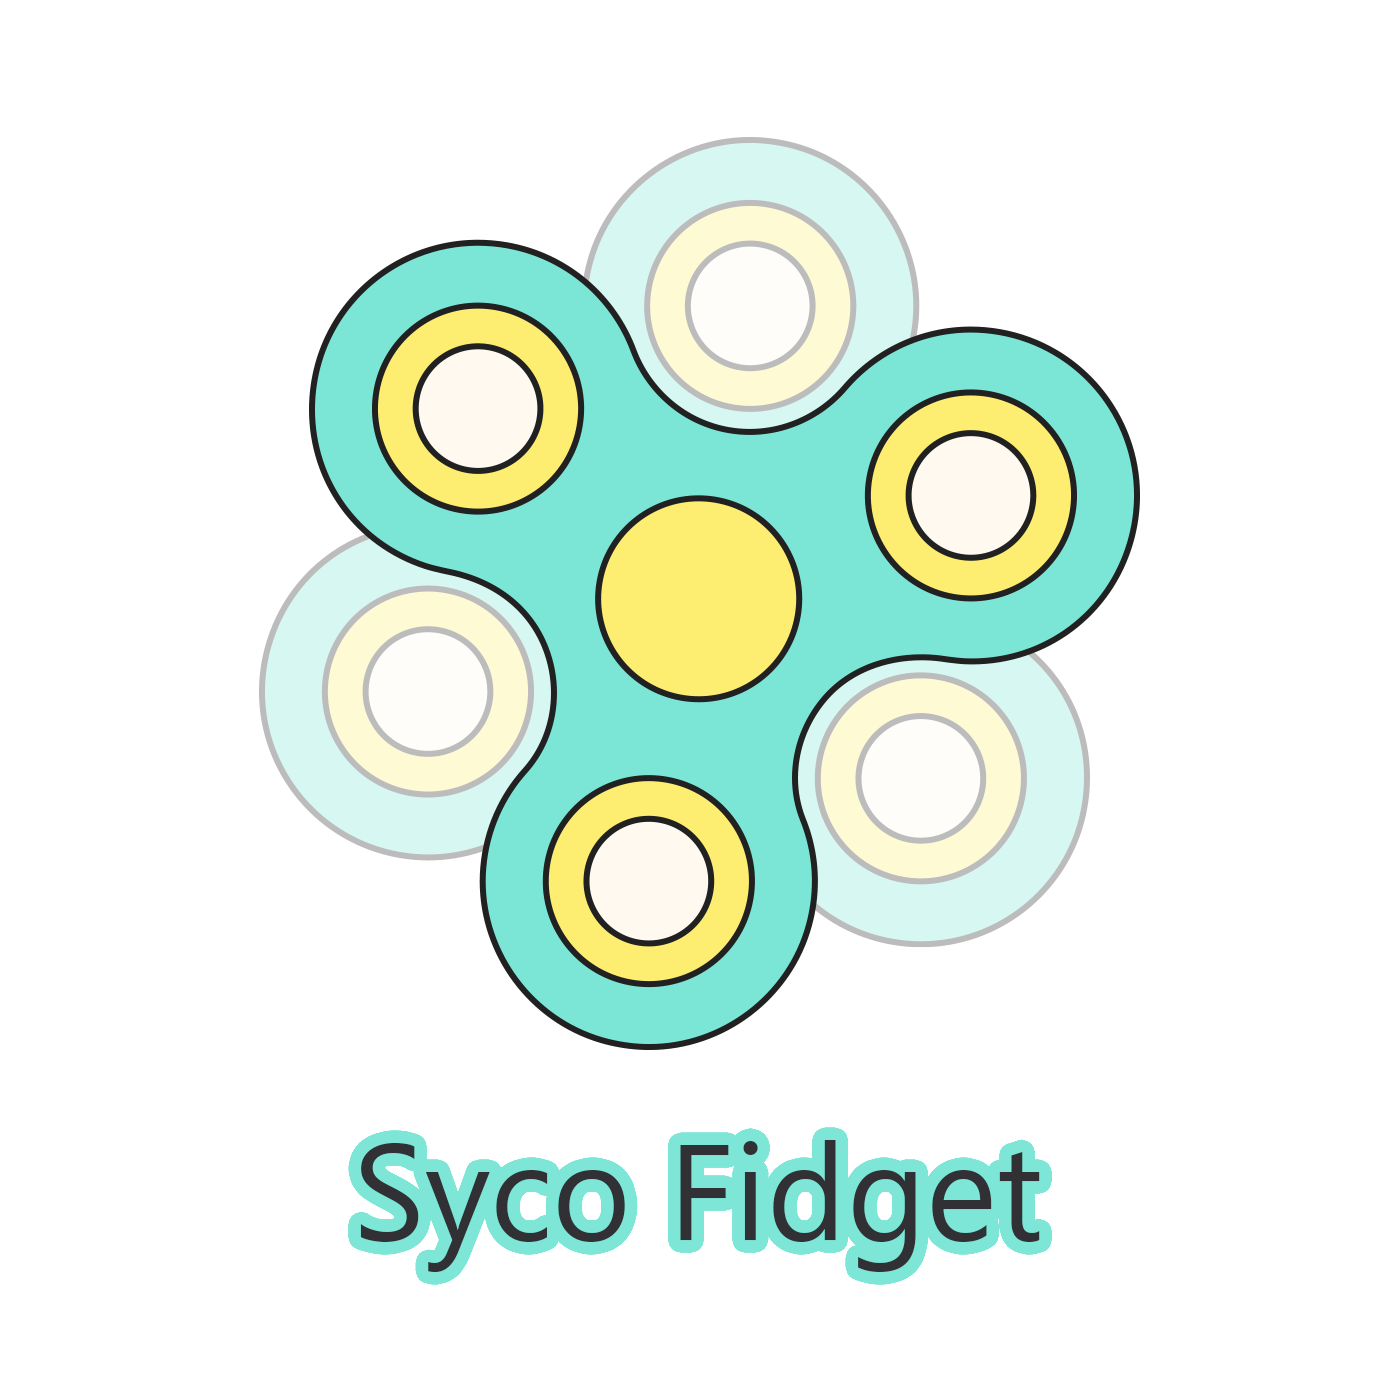 Syco Fidget